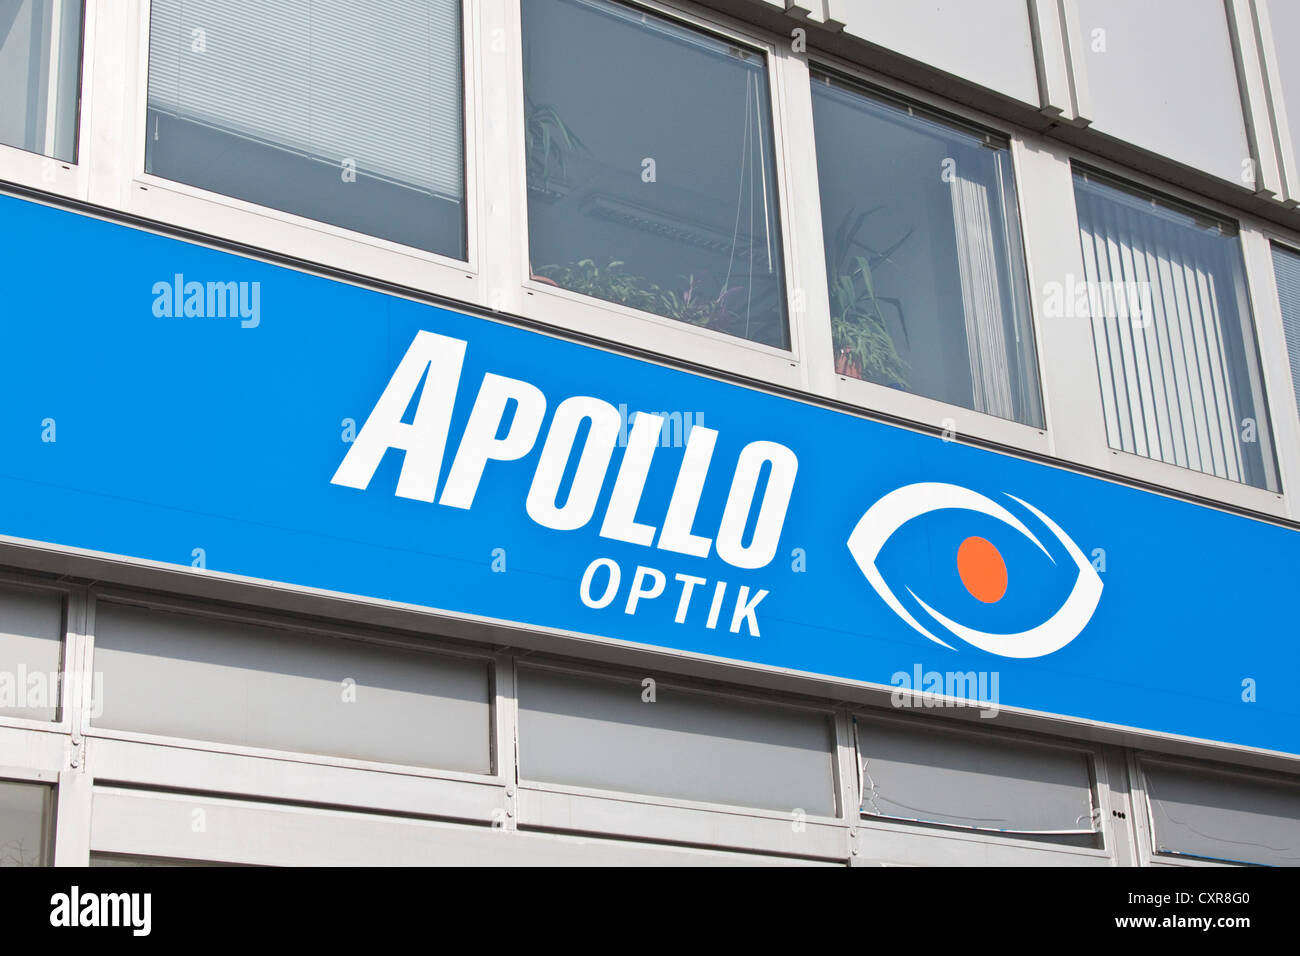 Apollo Optik, logo, signalétique, Germany, Europe Banque D'Images